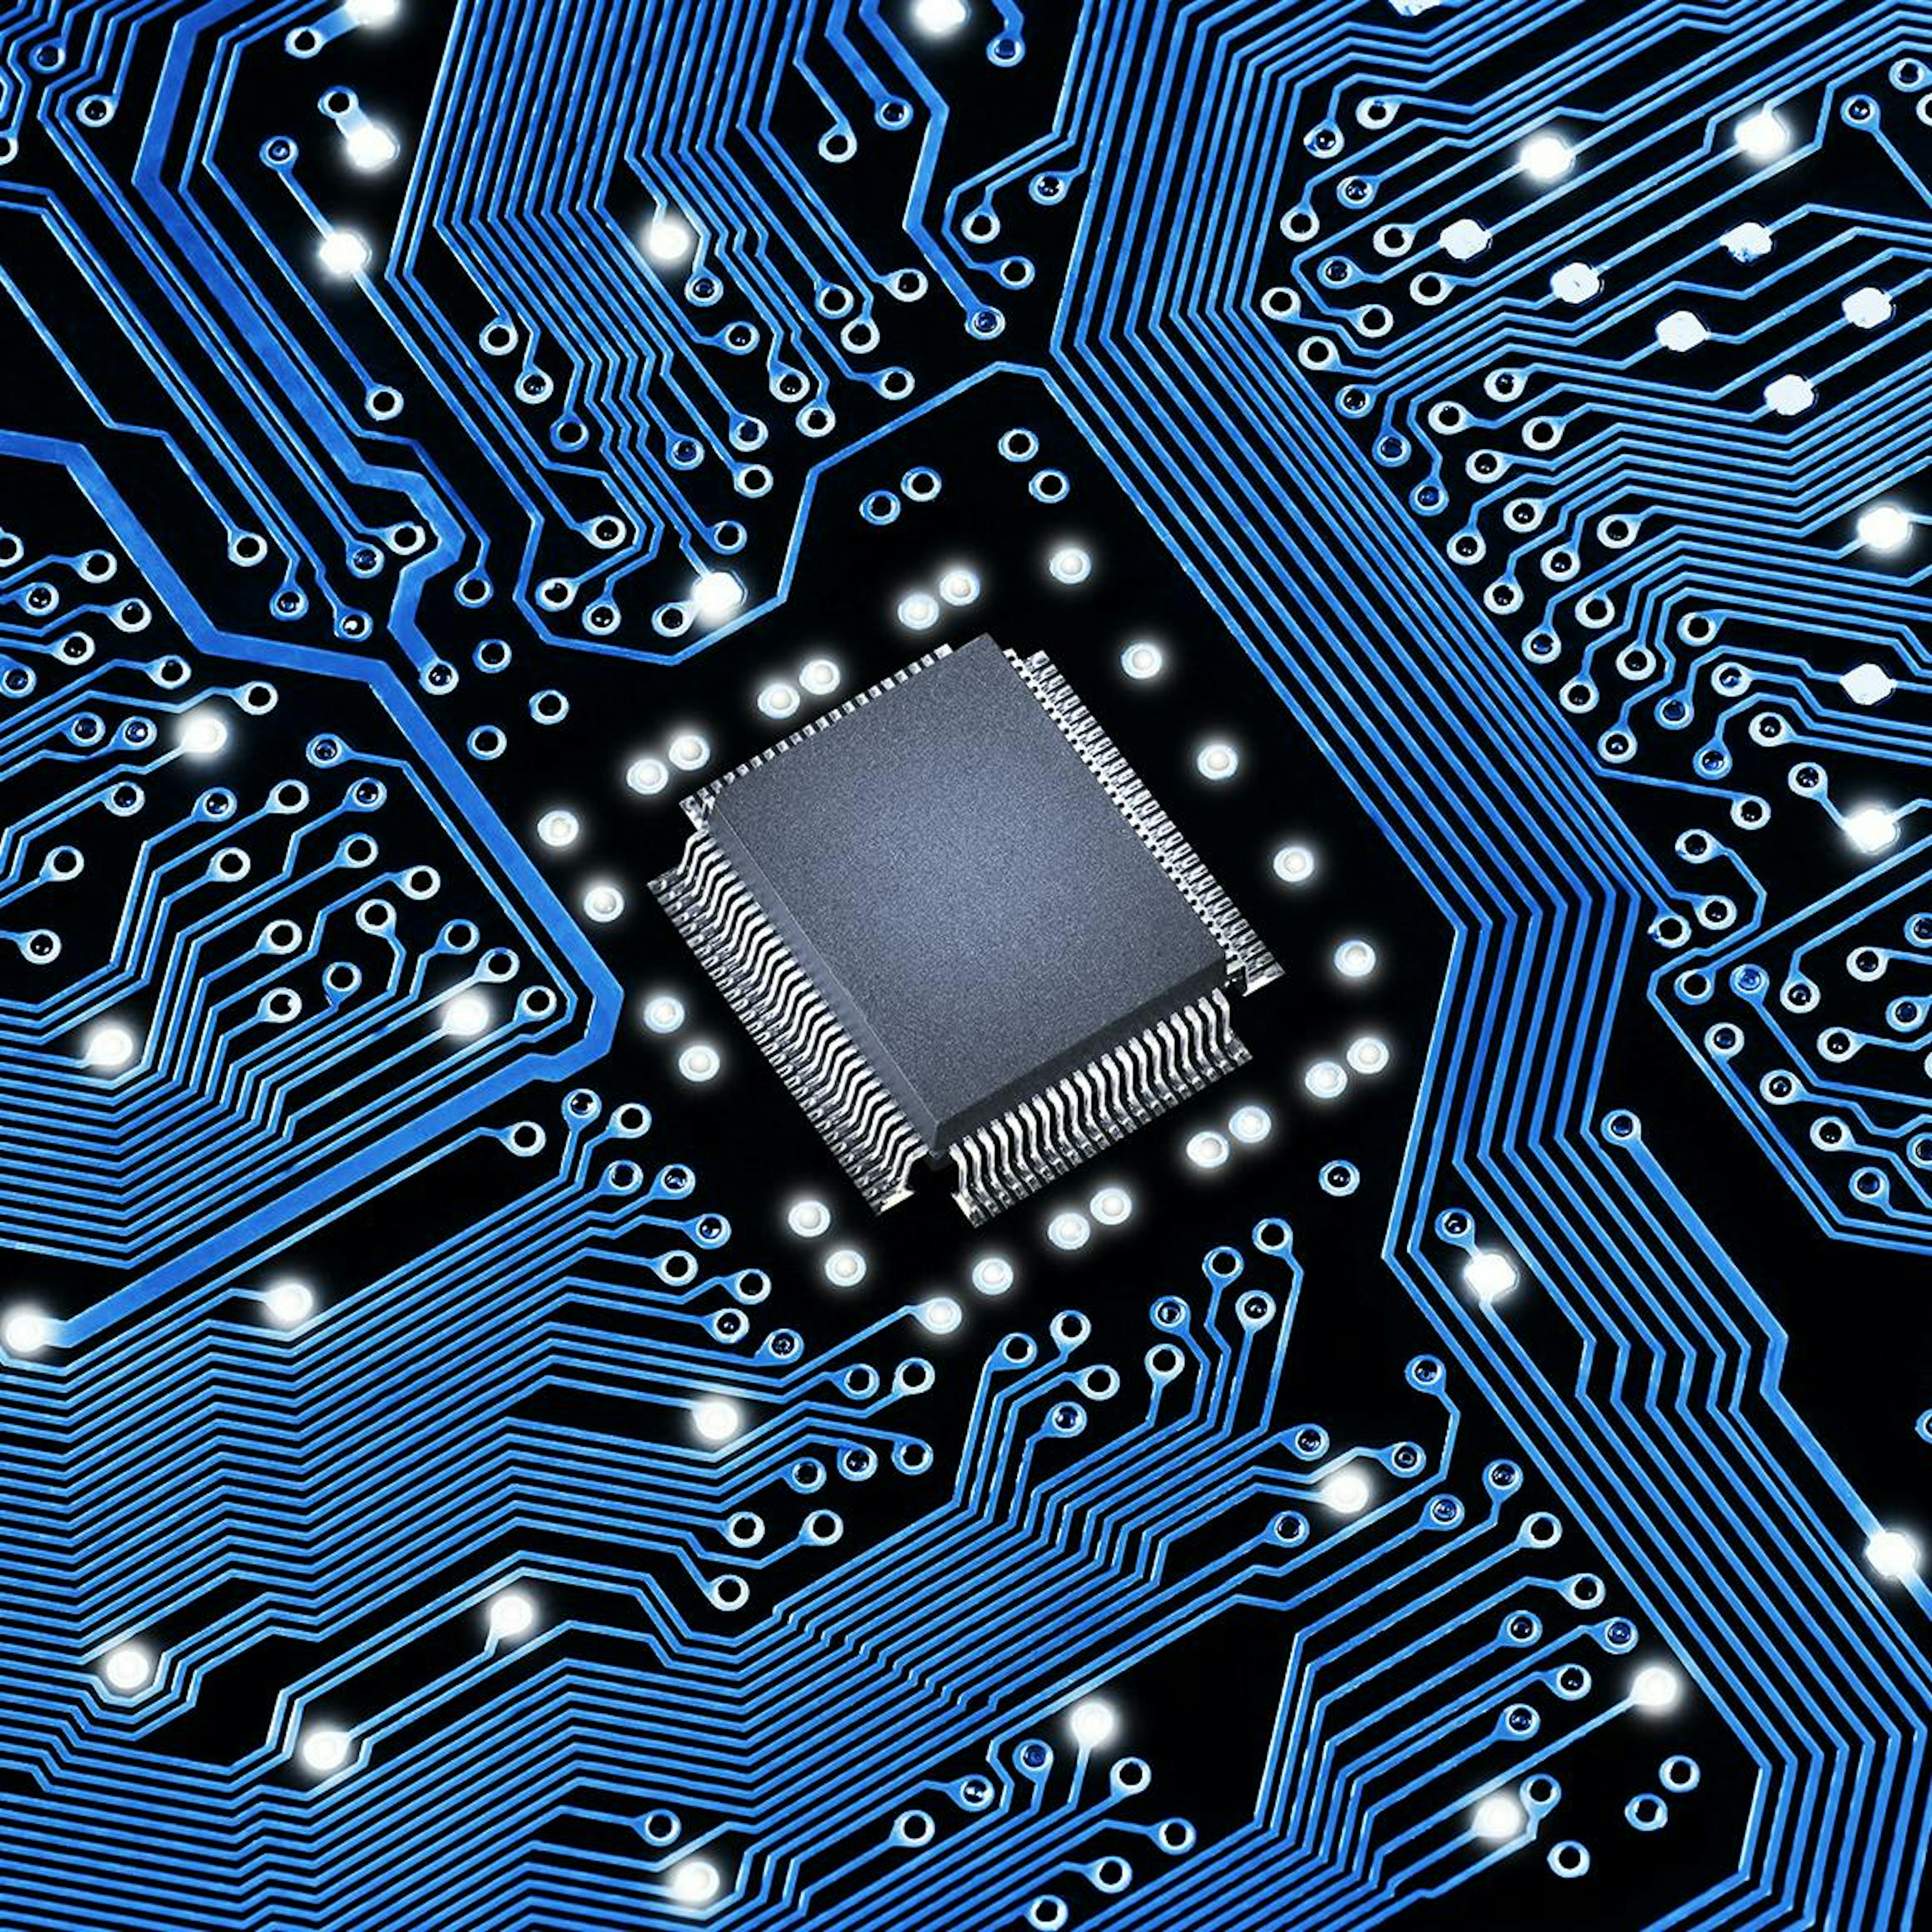 Ein Mikrochip auf einer blauen Leiterplatte.